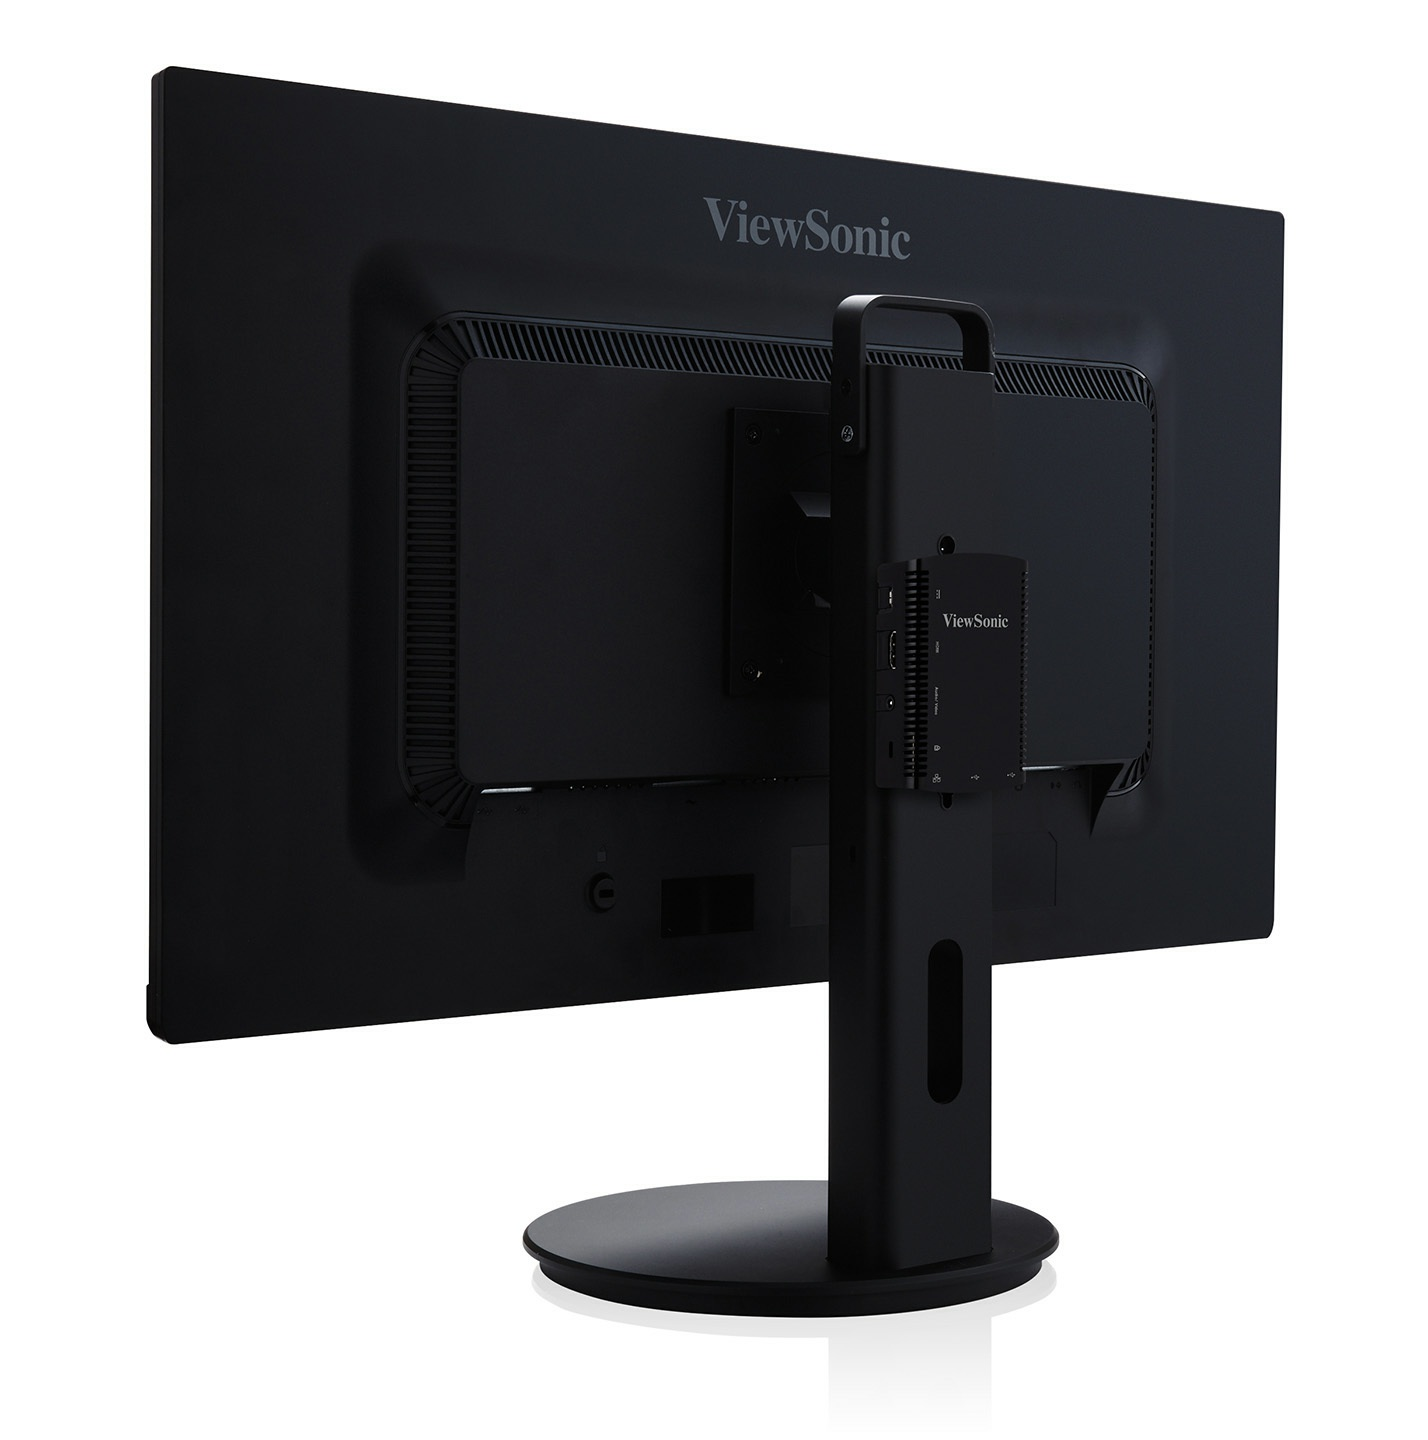 Soporte compatible con VESA Instale el monitor como desee